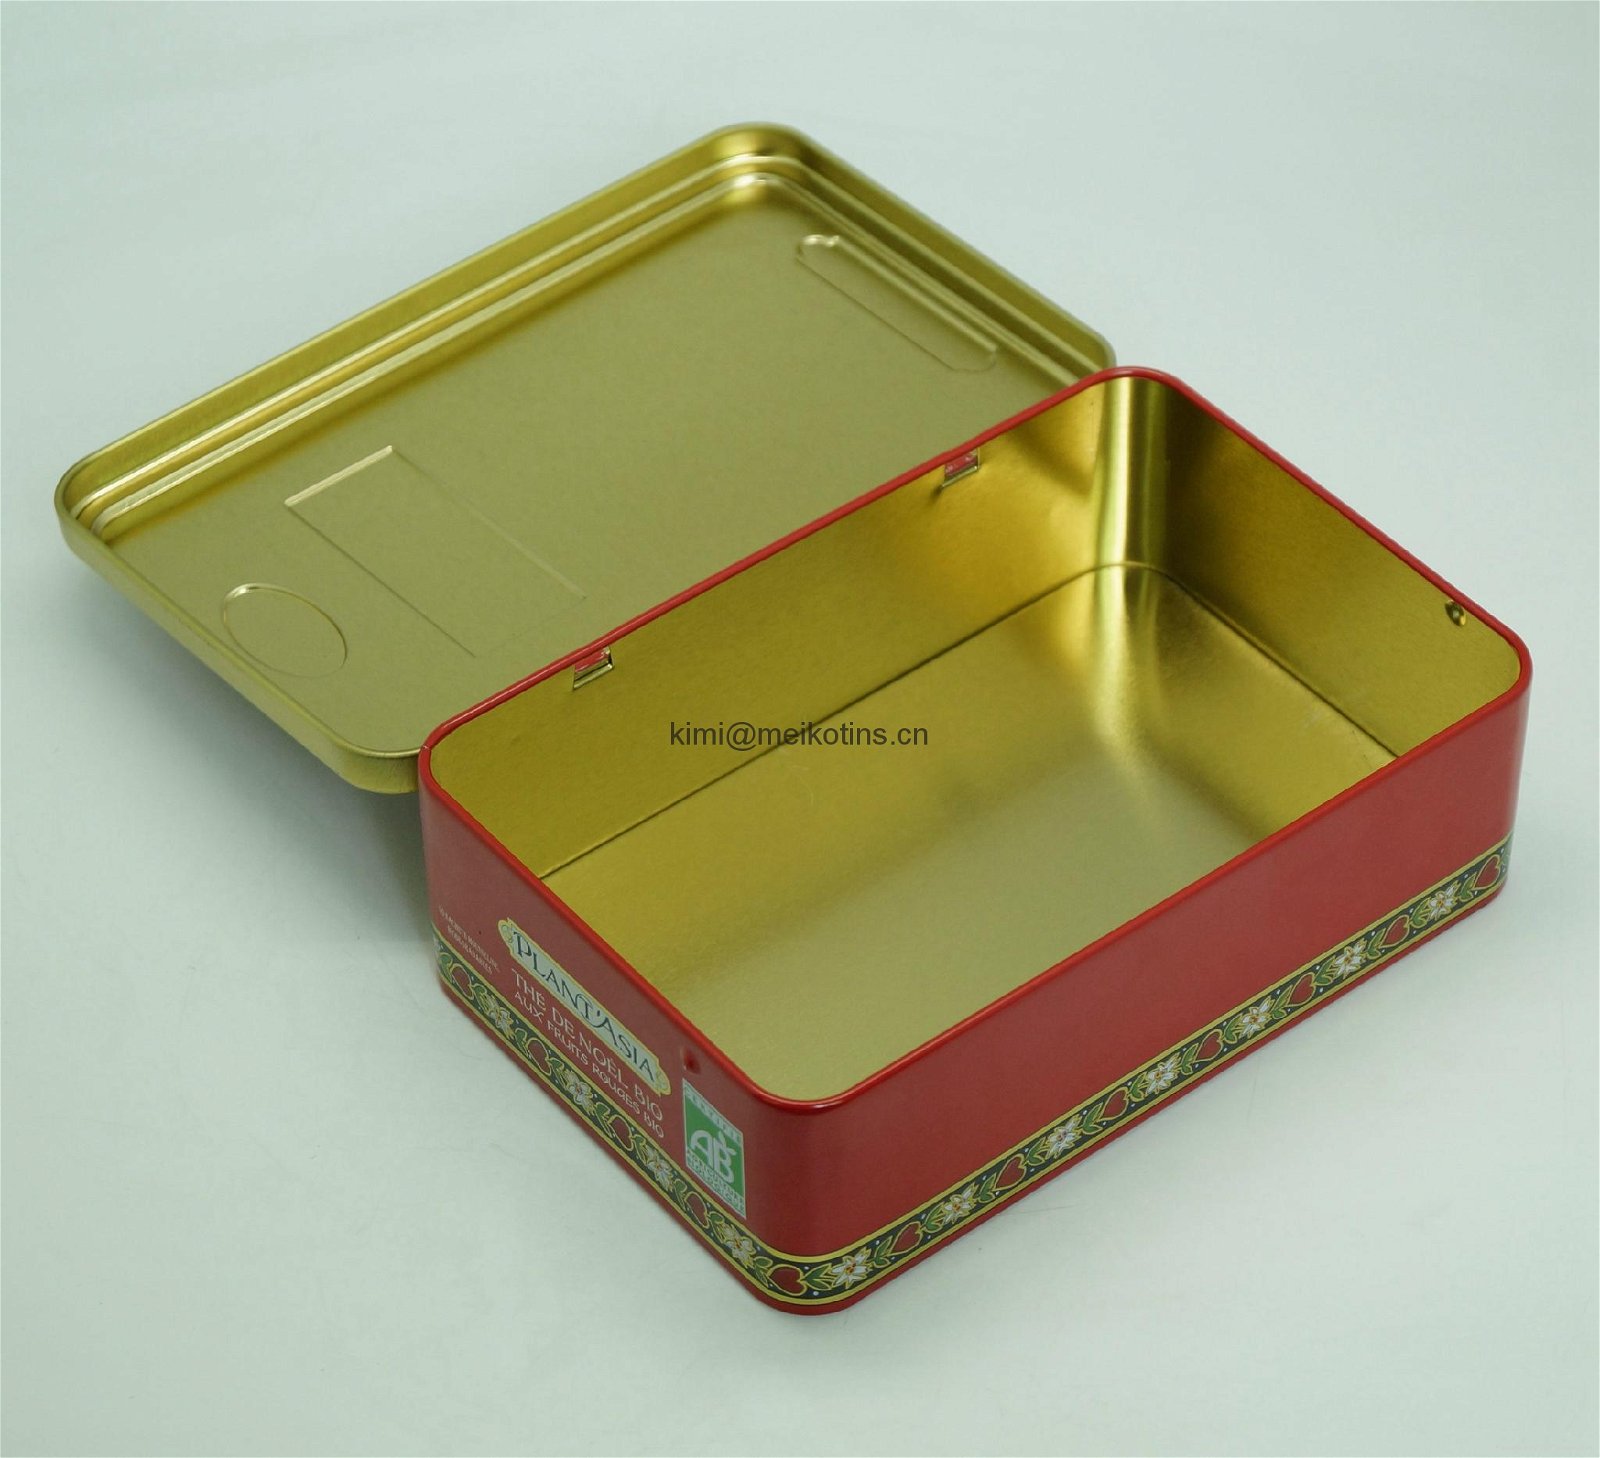  Rectangular Food Tin Box 2